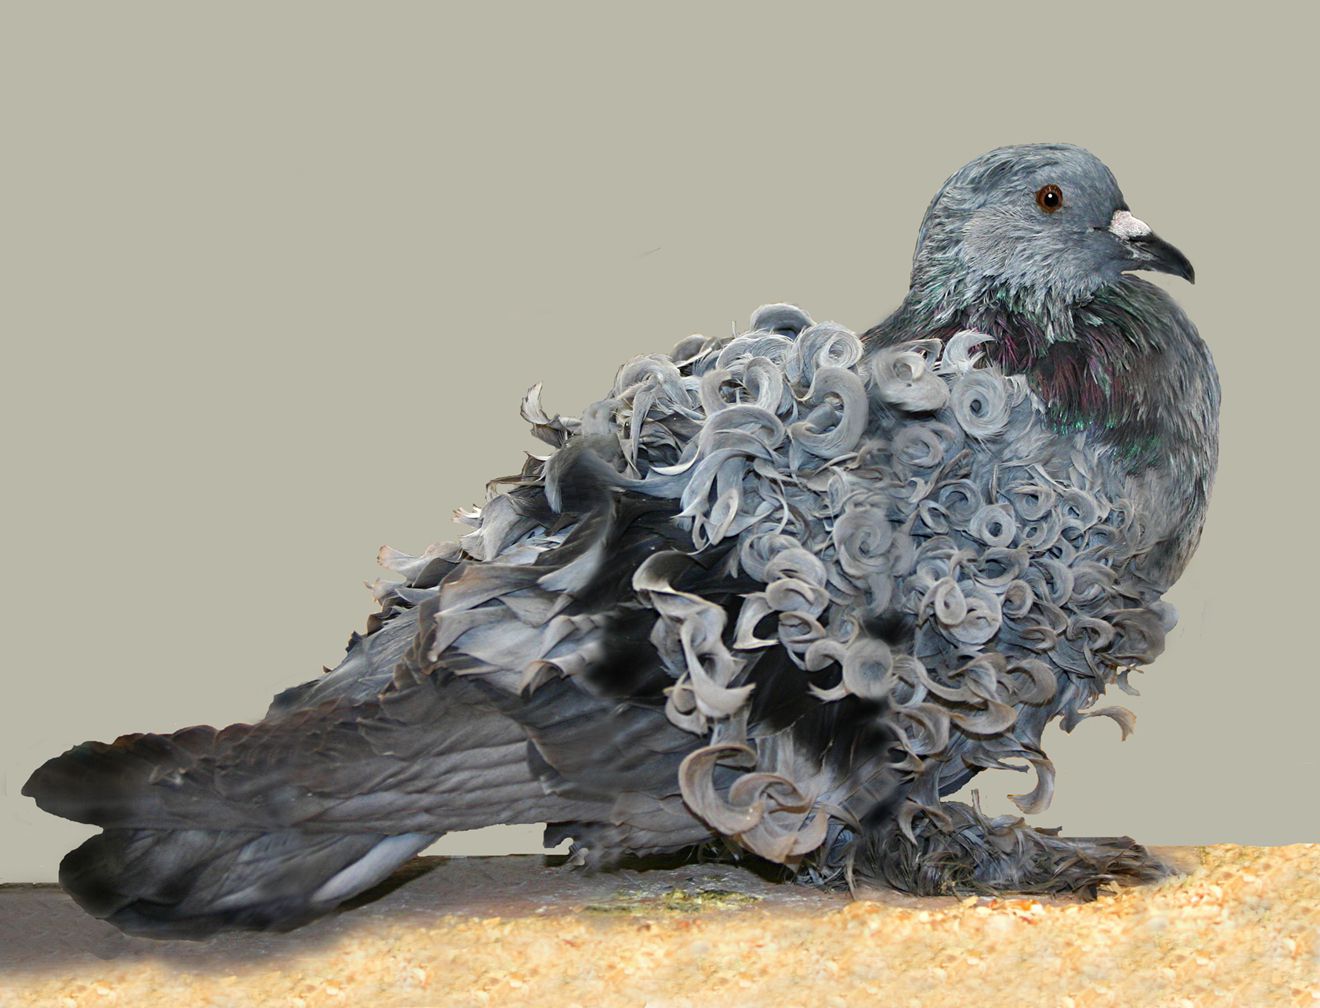 Una paloma gris de espalda frillada de pie sobre el suelo cubierto de serrín